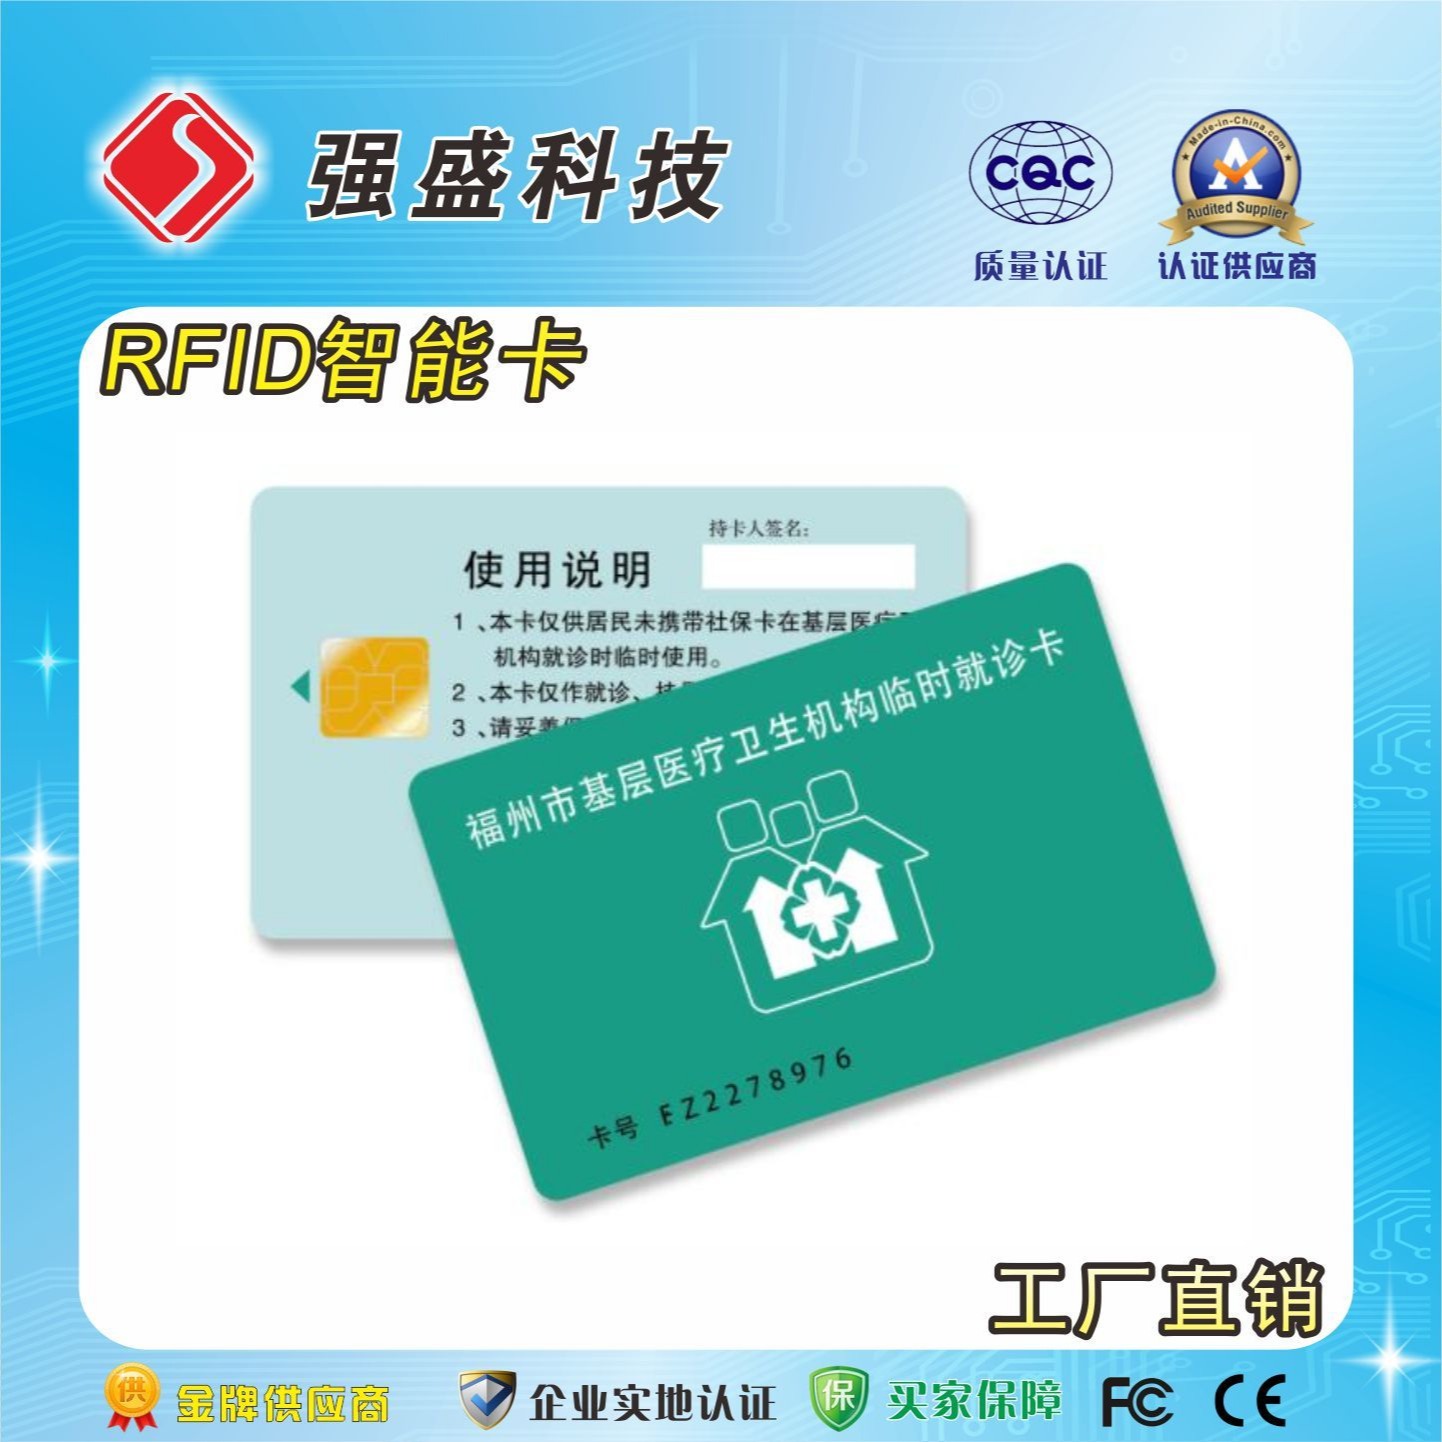 供应SLE4428接触式芯片卡 医疗保险卡 IC卡印刷图片